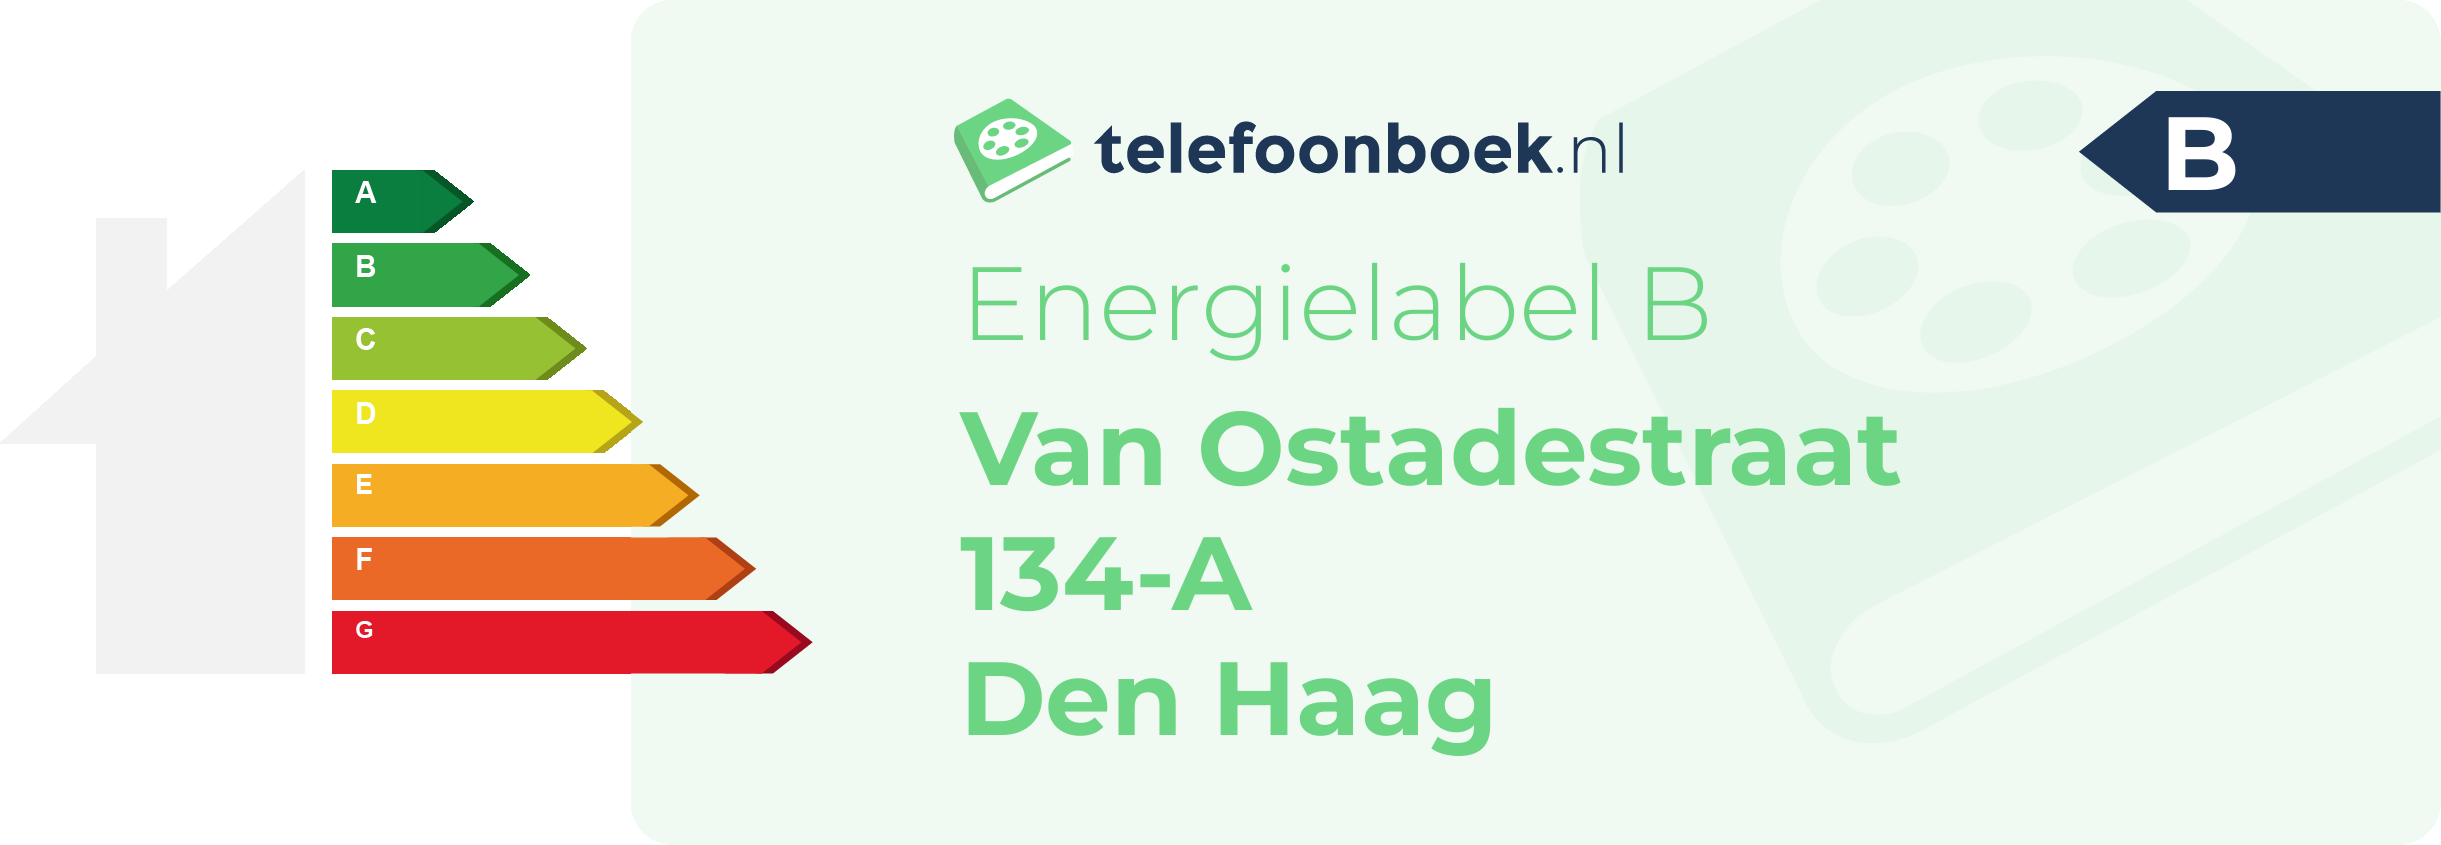 Energielabel Van Ostadestraat 134-A Den Haag